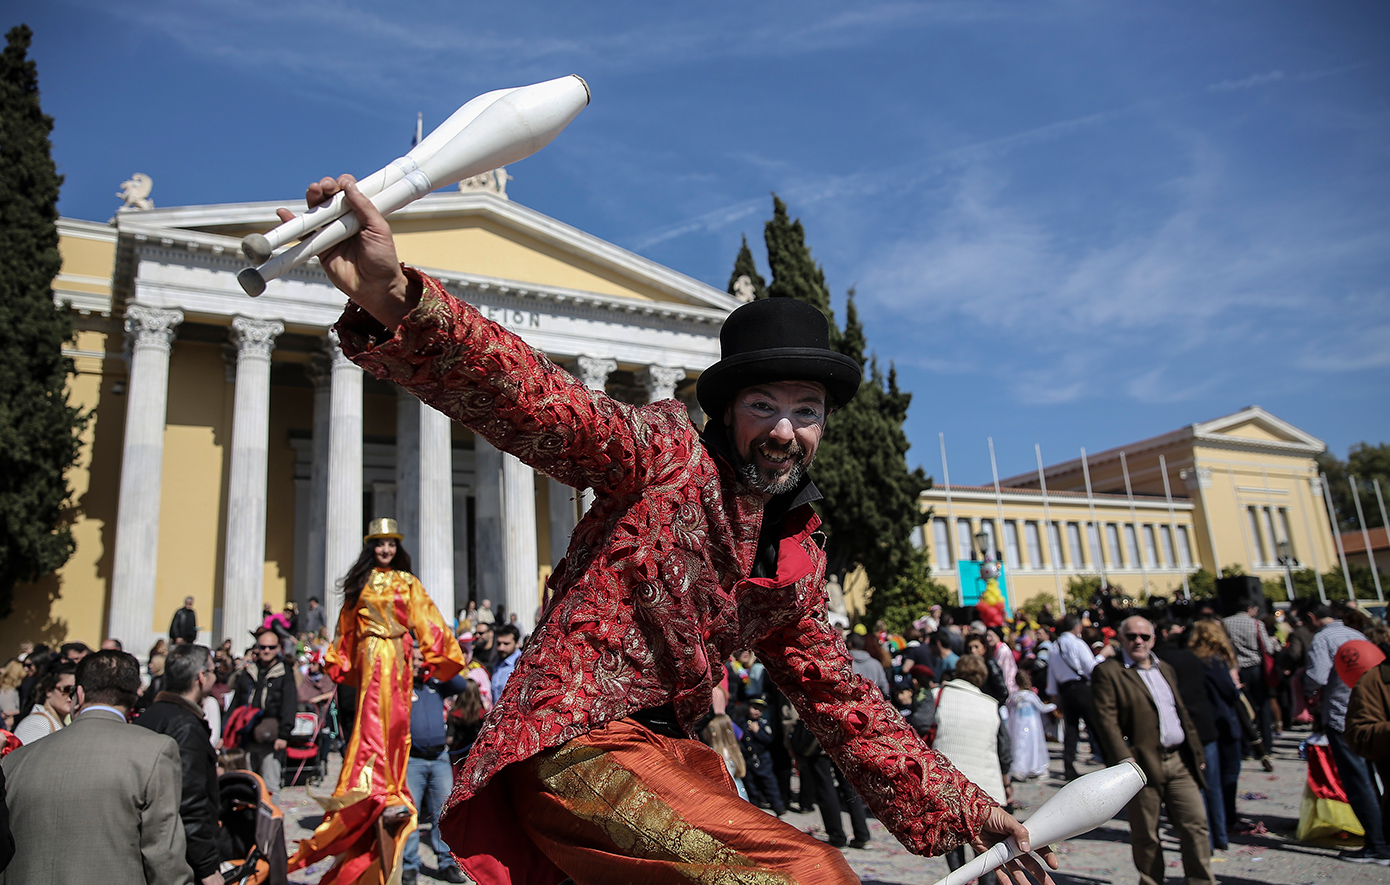 Δωρεάν εορταστικές εκδηλώσεις στην Αθήνα το τριήμερο της Καθαράς Δευτέρας